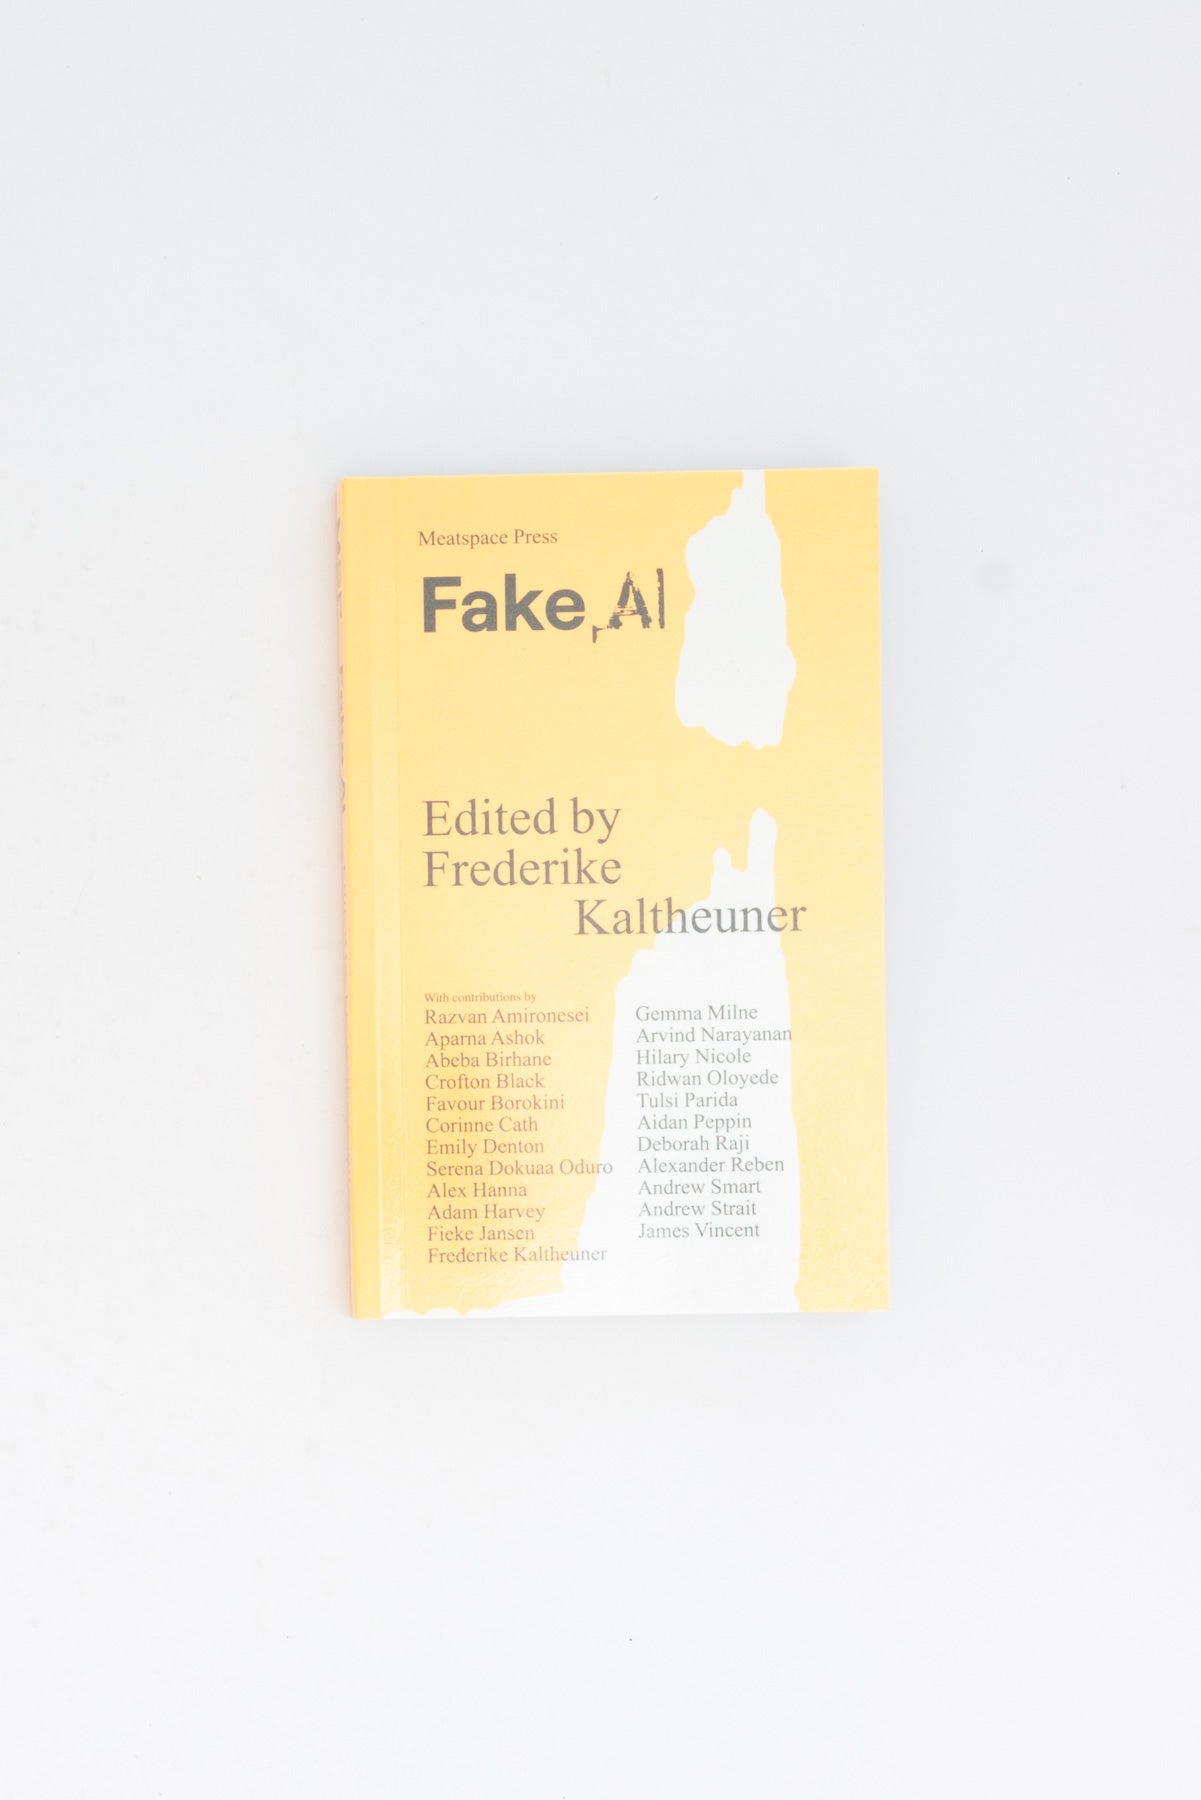 Fake AI - Frederike Kaltheuner ed.